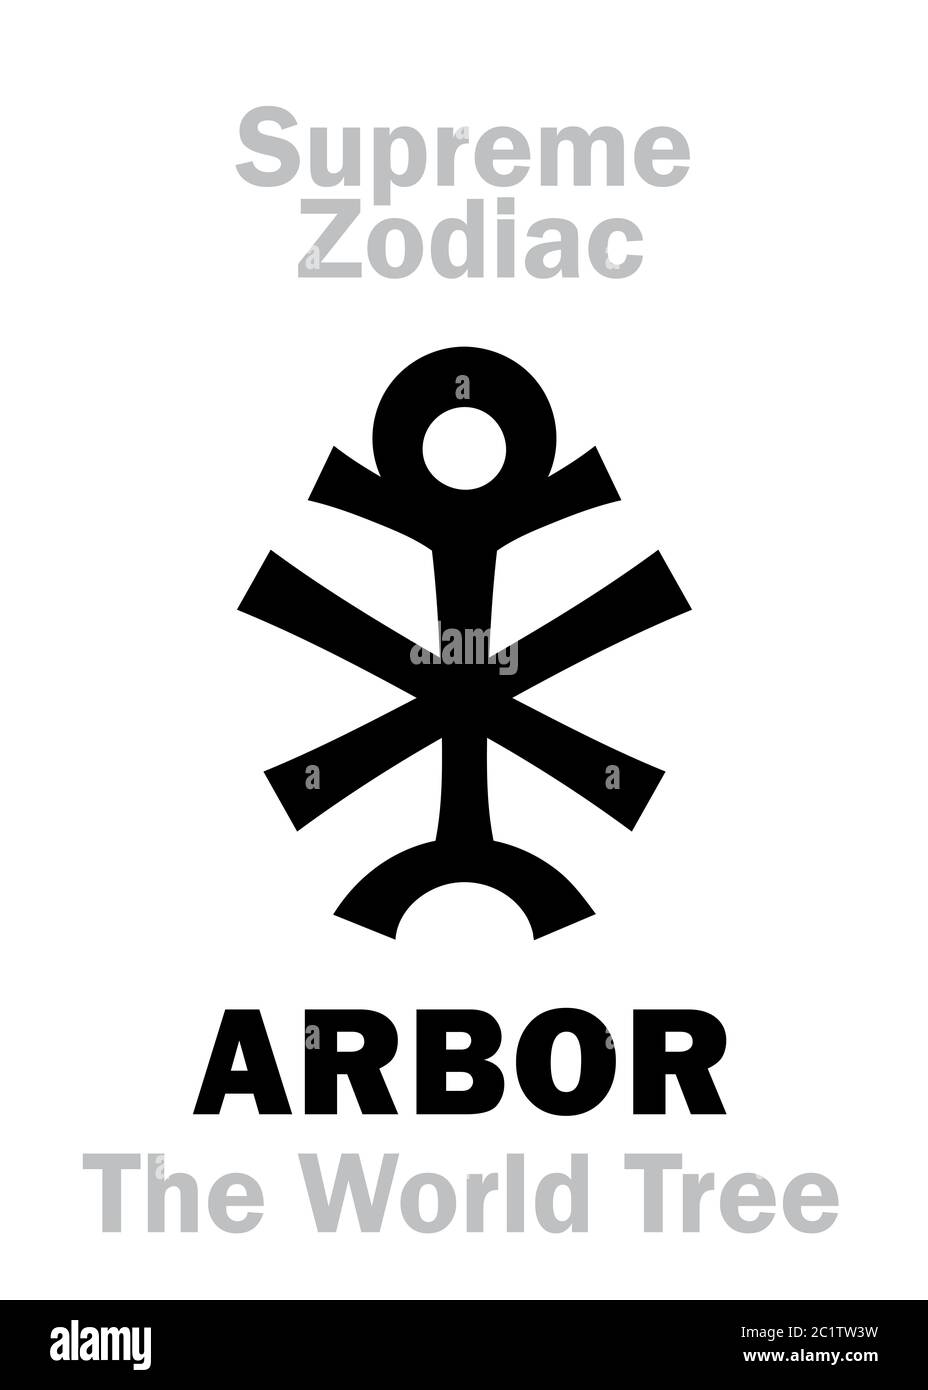 Astrologia: Zodiaco supremo: ARBOR (l'albero del mondo)  Cassiopeia («Trono dei cieli») Foto Stock